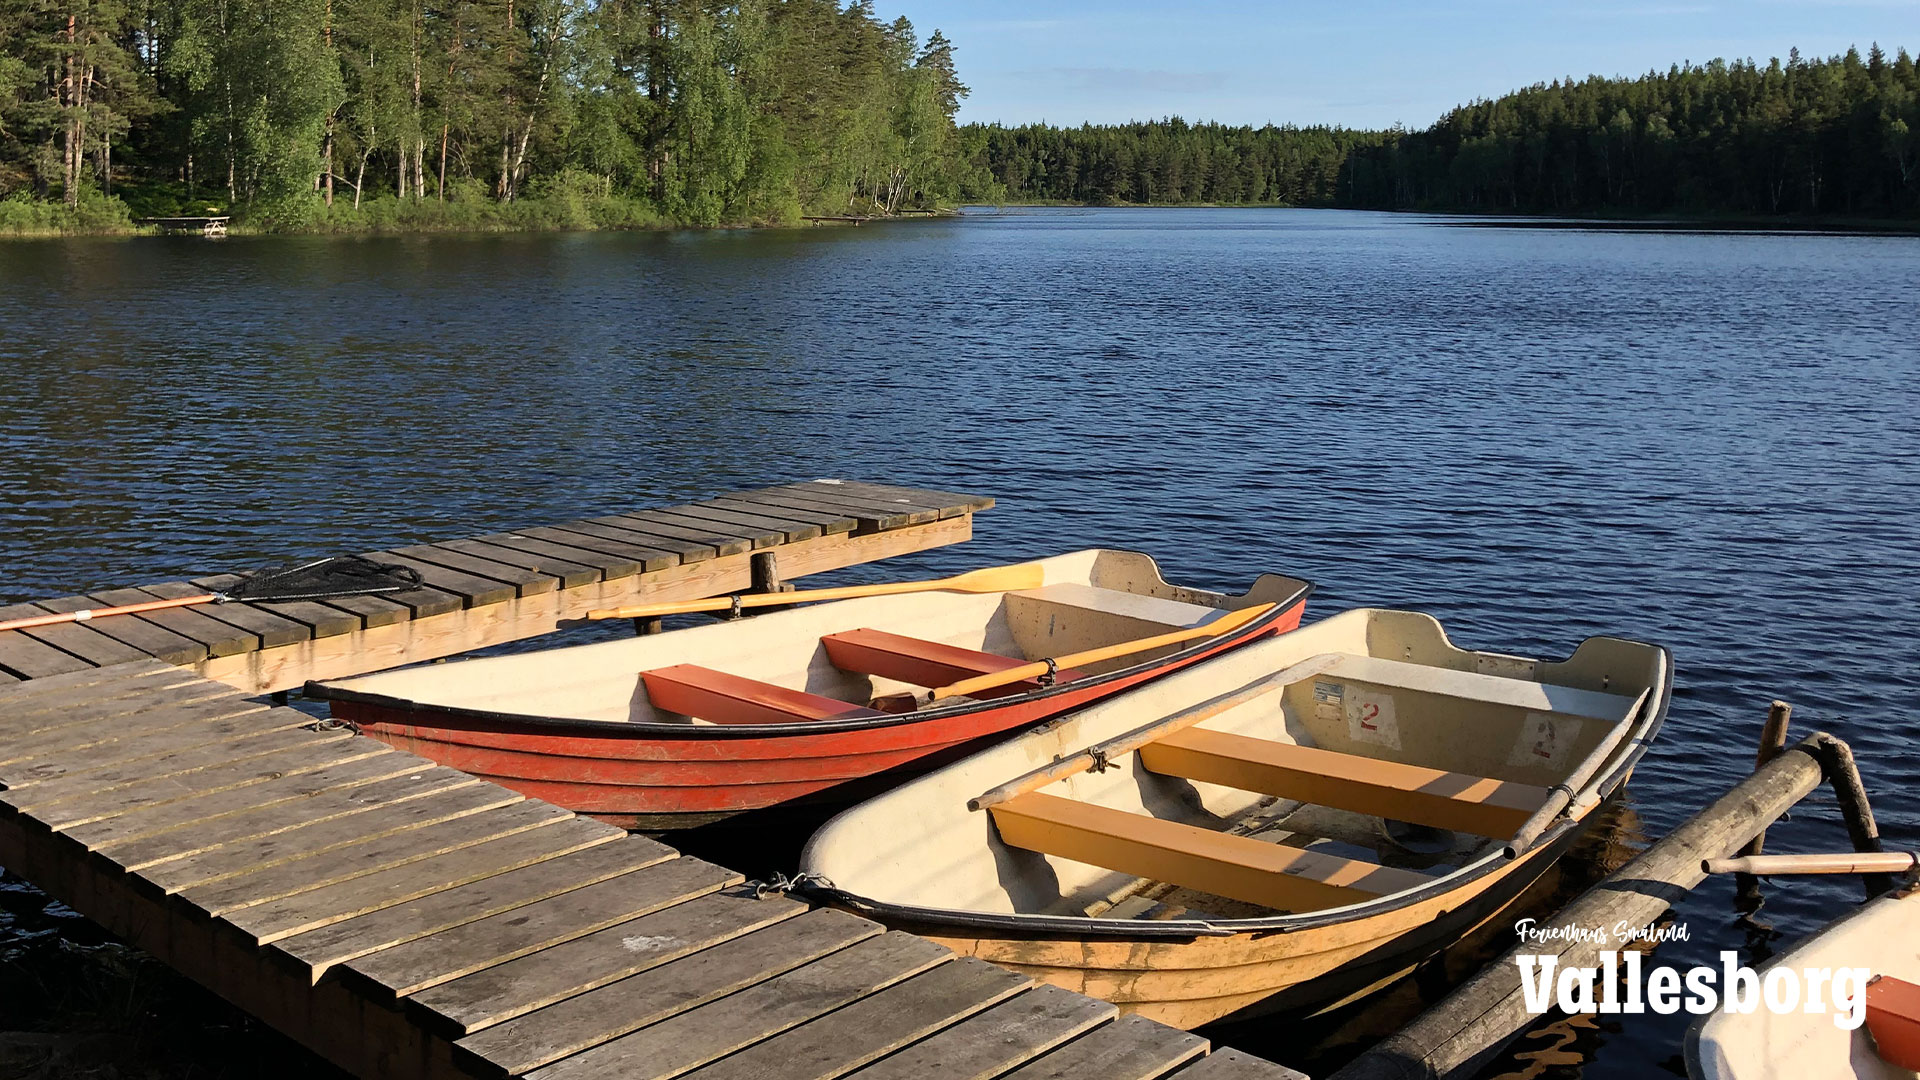 Harasjömåla Seen in Olofström mit Bootsverleih